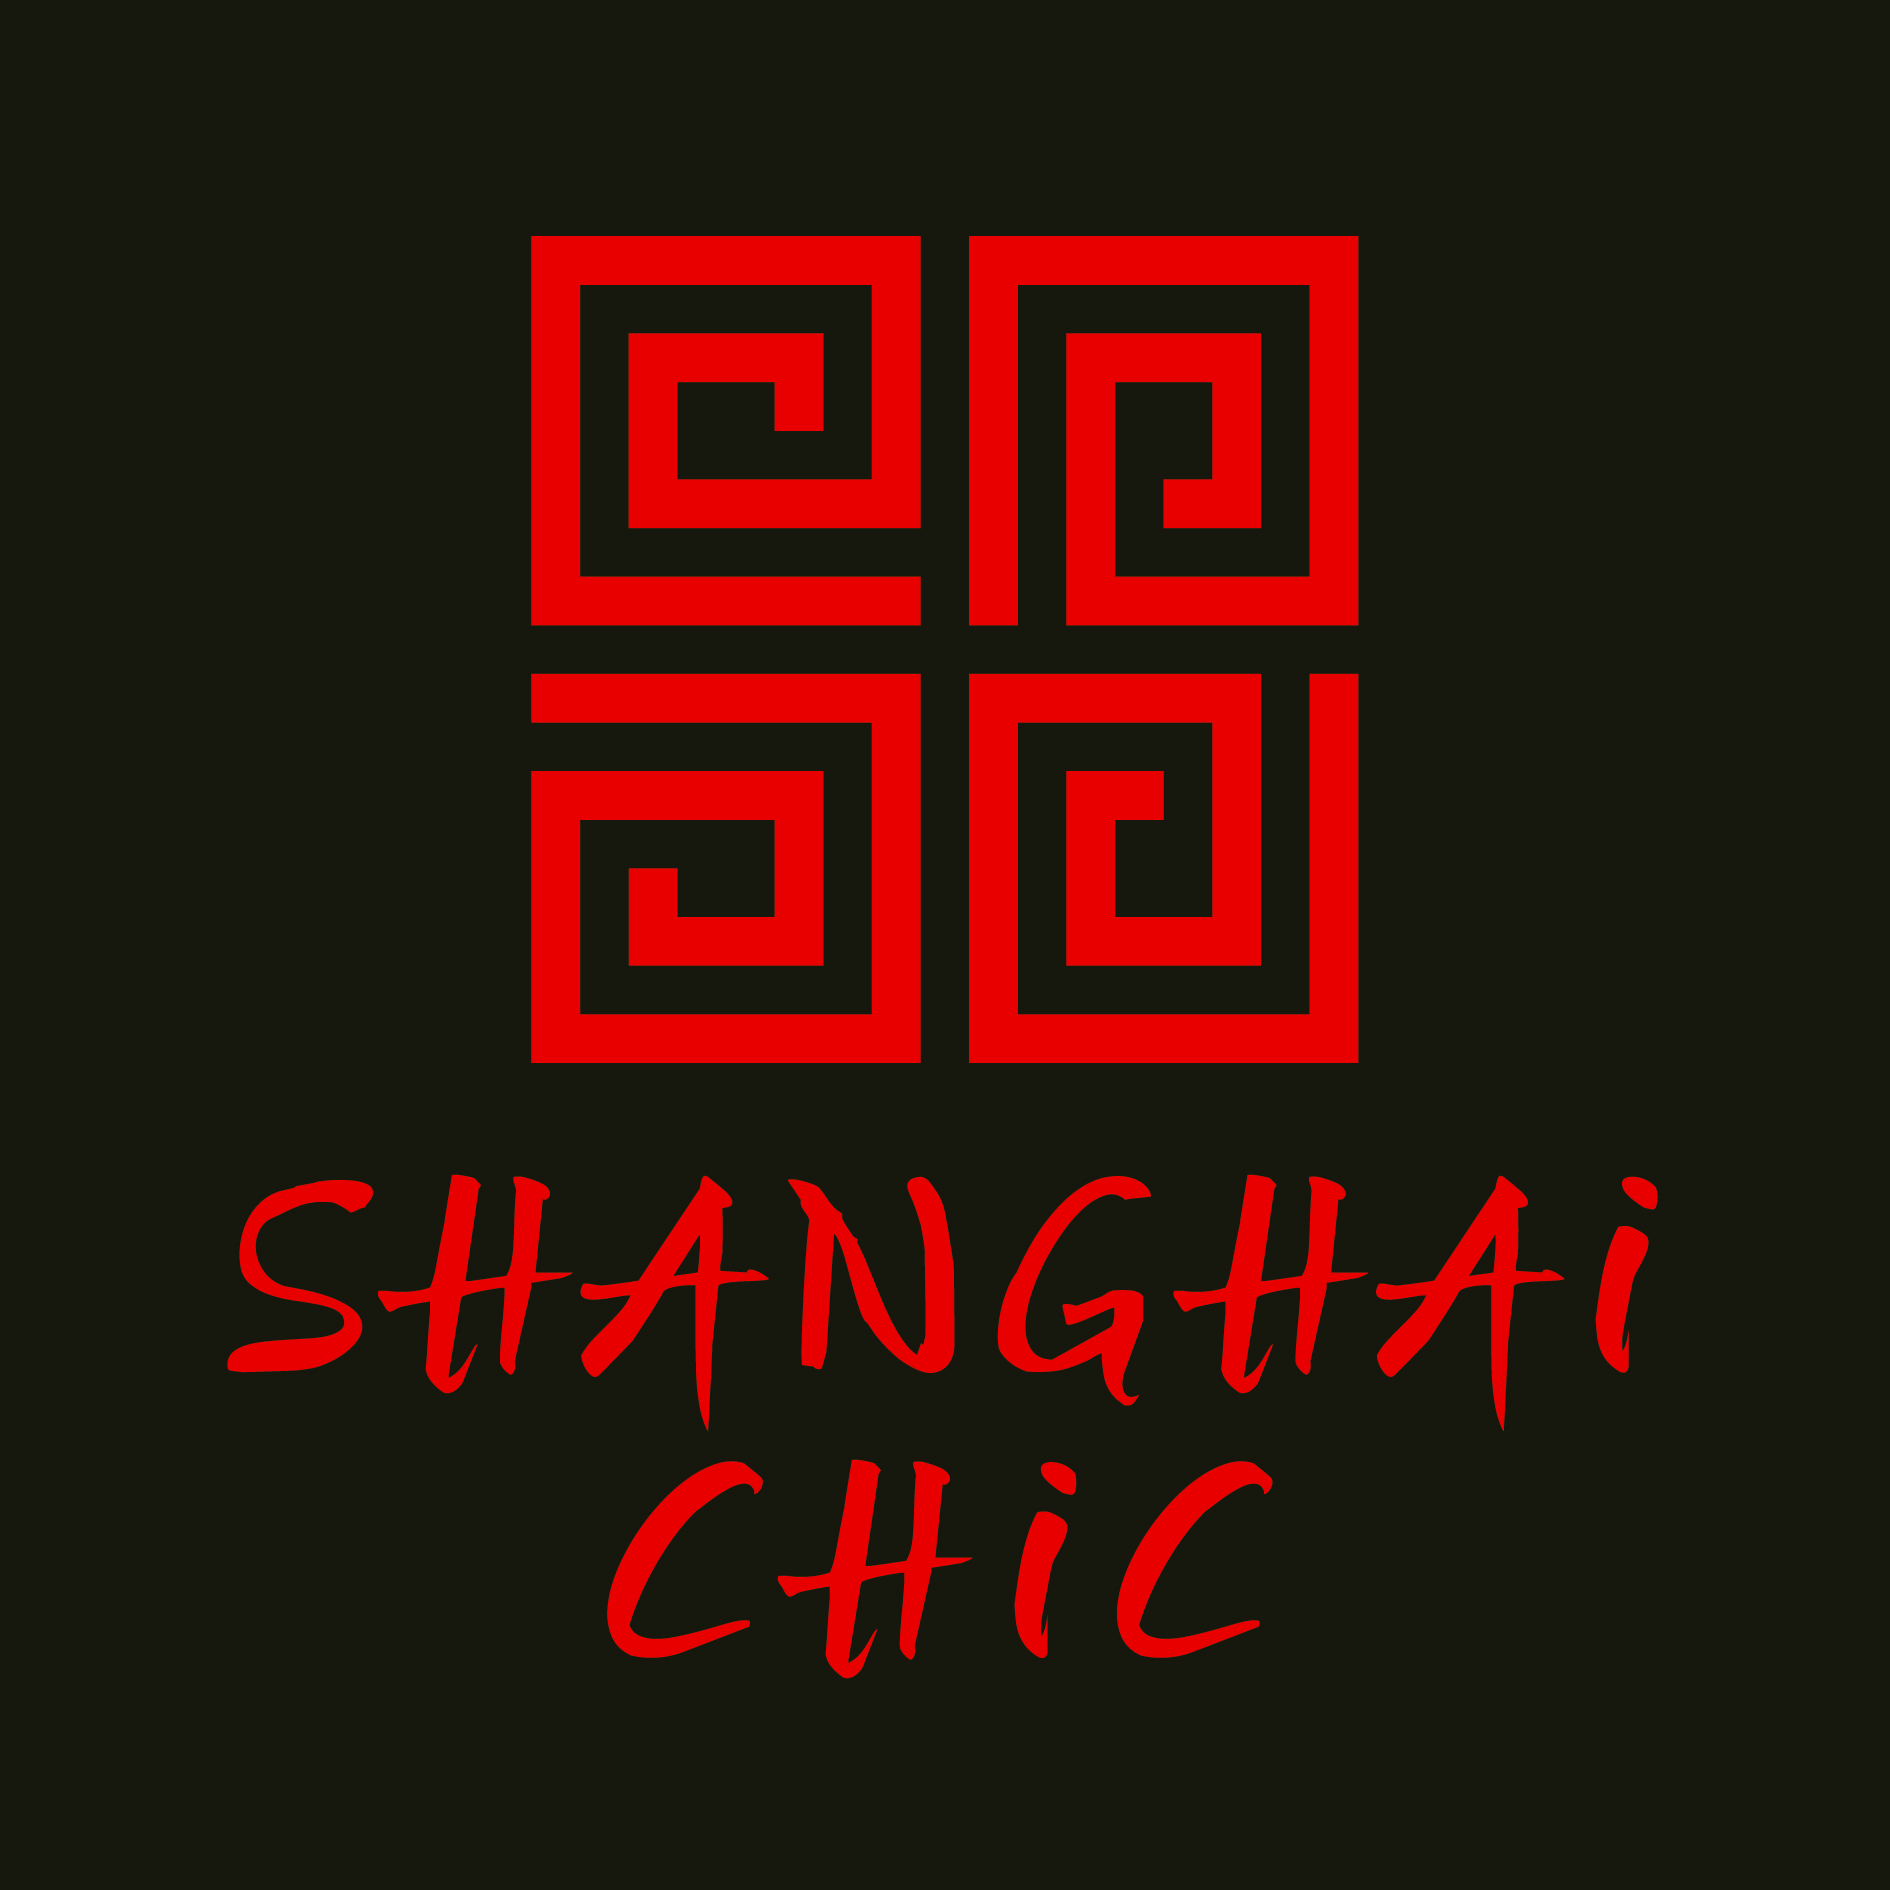 Shanghai Chic